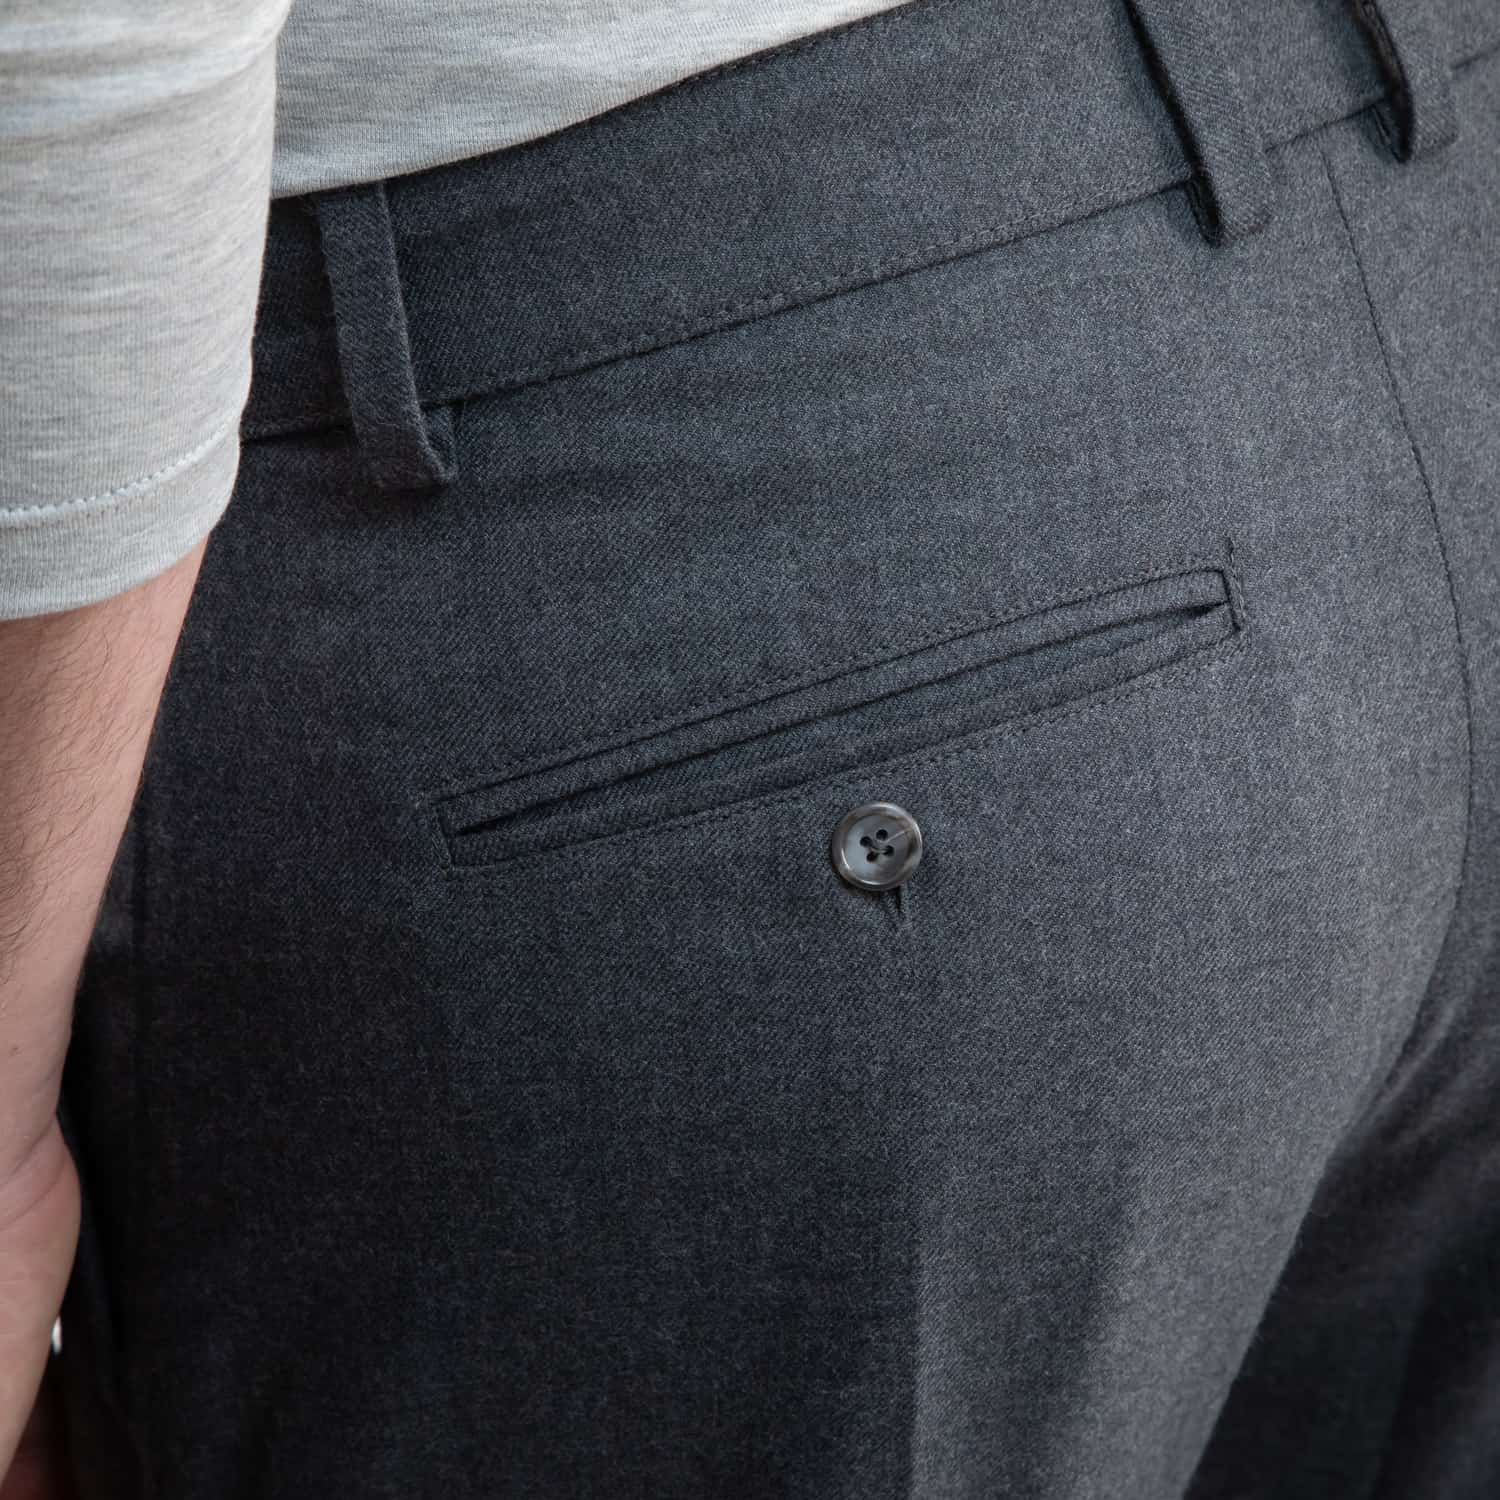 El Capitan Trouser - Medium Grey - Men's Pants Made in USA